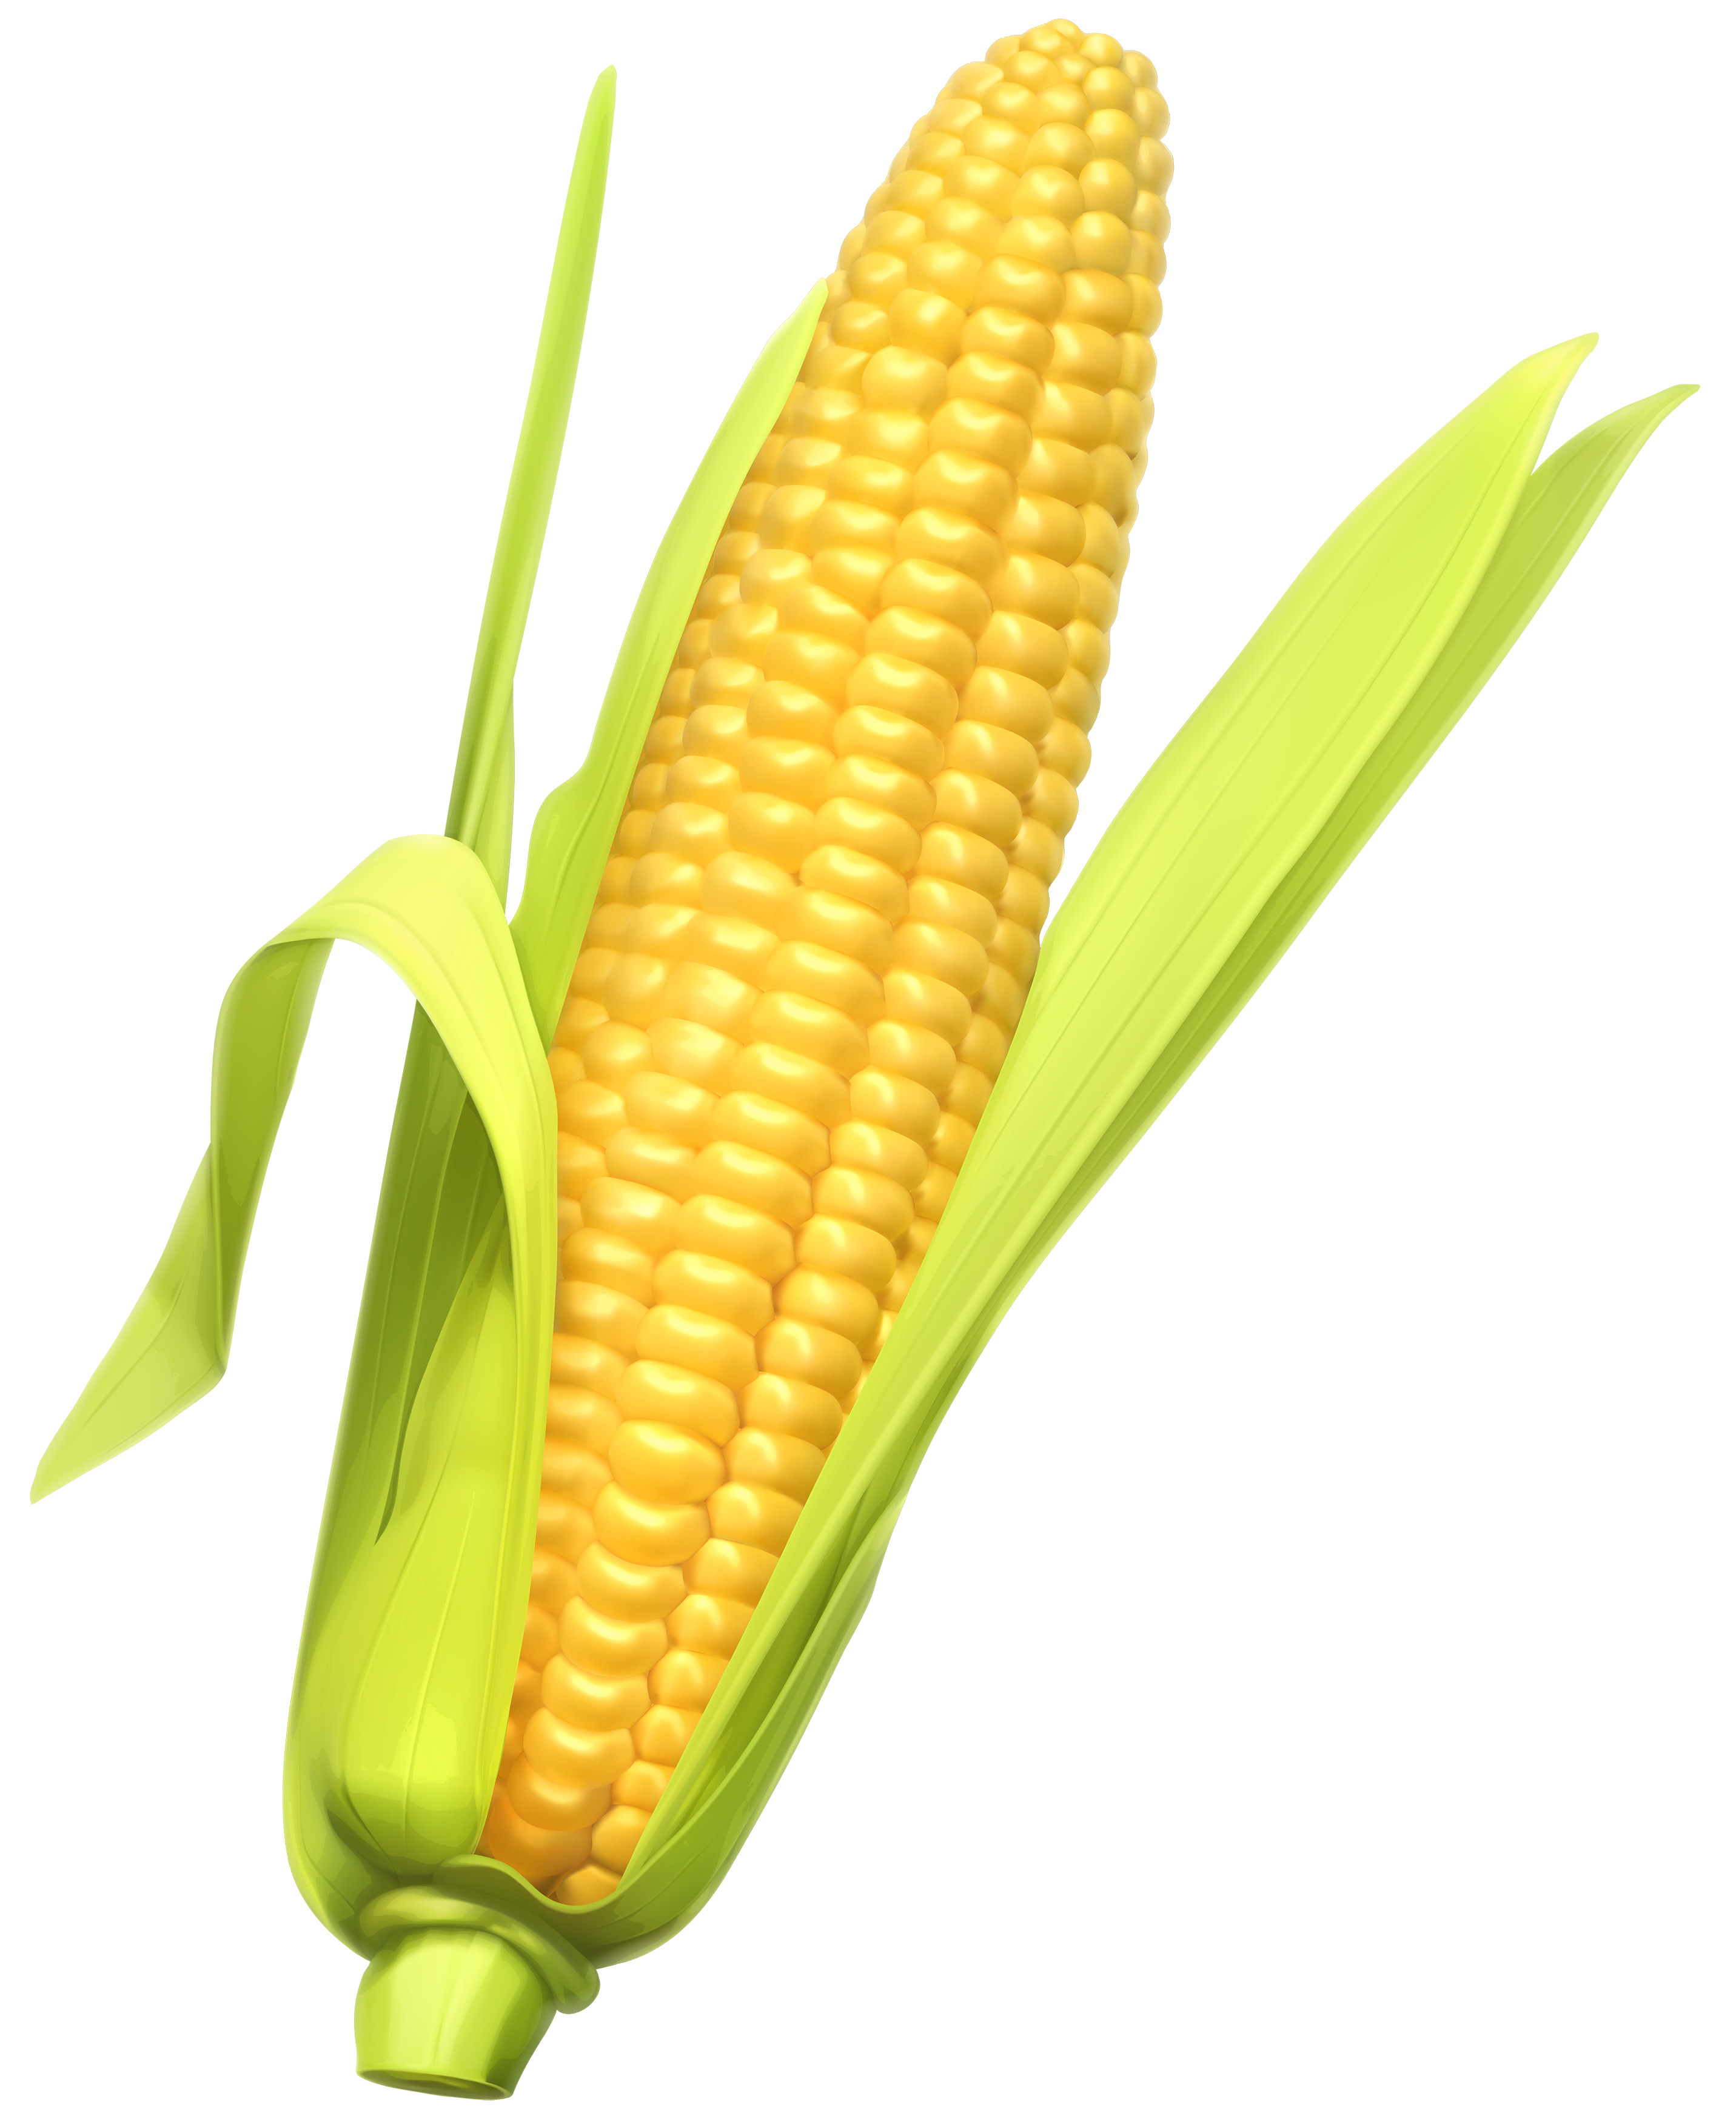 https://www.freepnglogos.com/uploads/corn-png/vector-clipart-corn-pencil-and-color-vector-clipart-corn-19.png